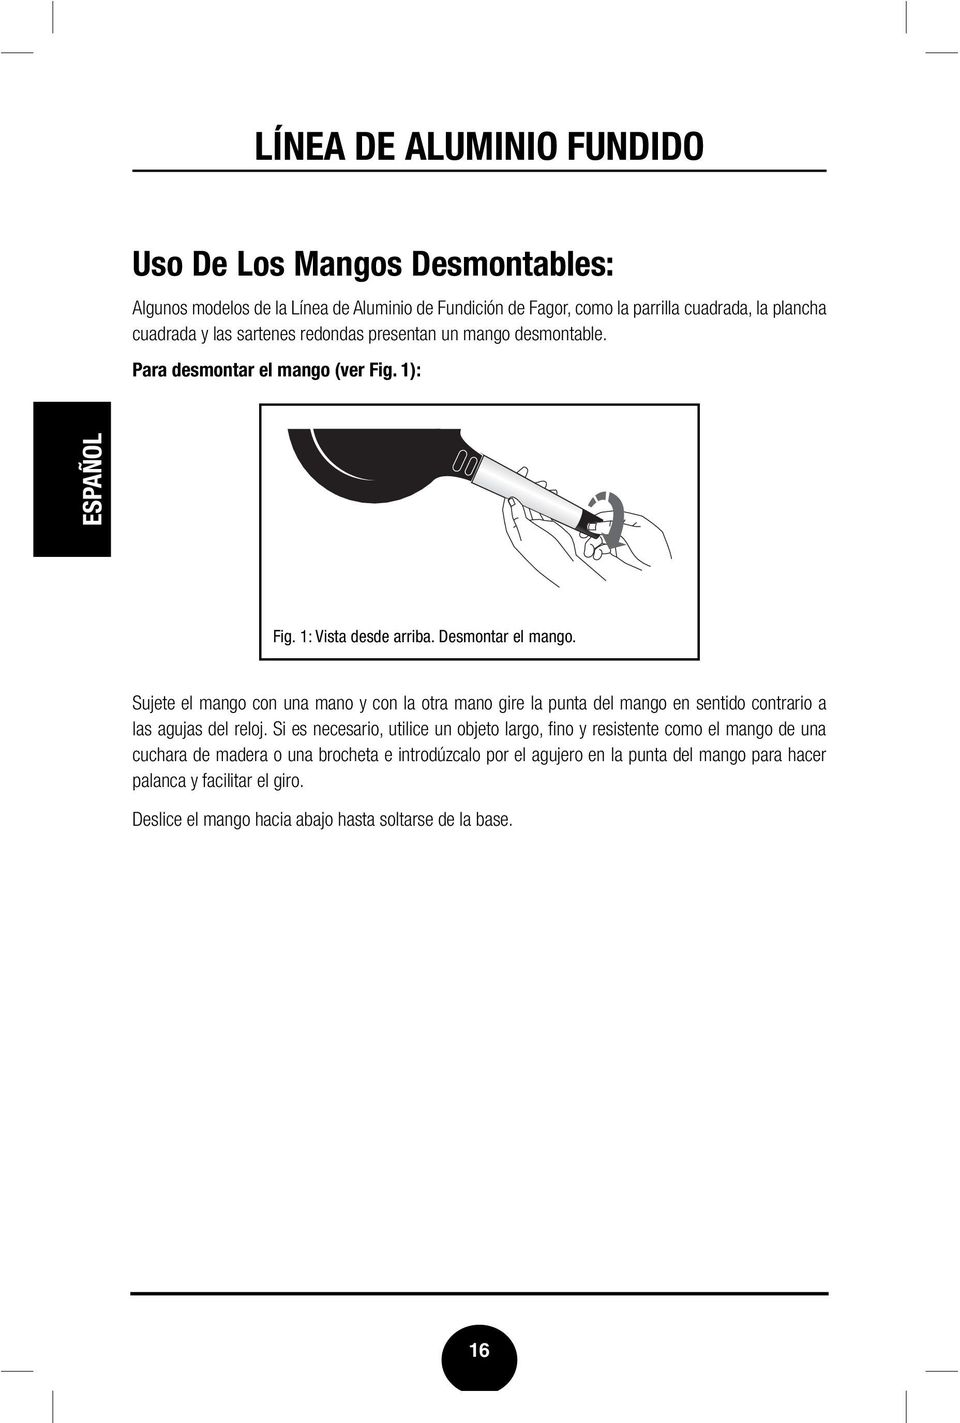 Sujete el mango con una mano y con la otra mano gire la punta del mango en sentido contrario a las agujas del reloj.